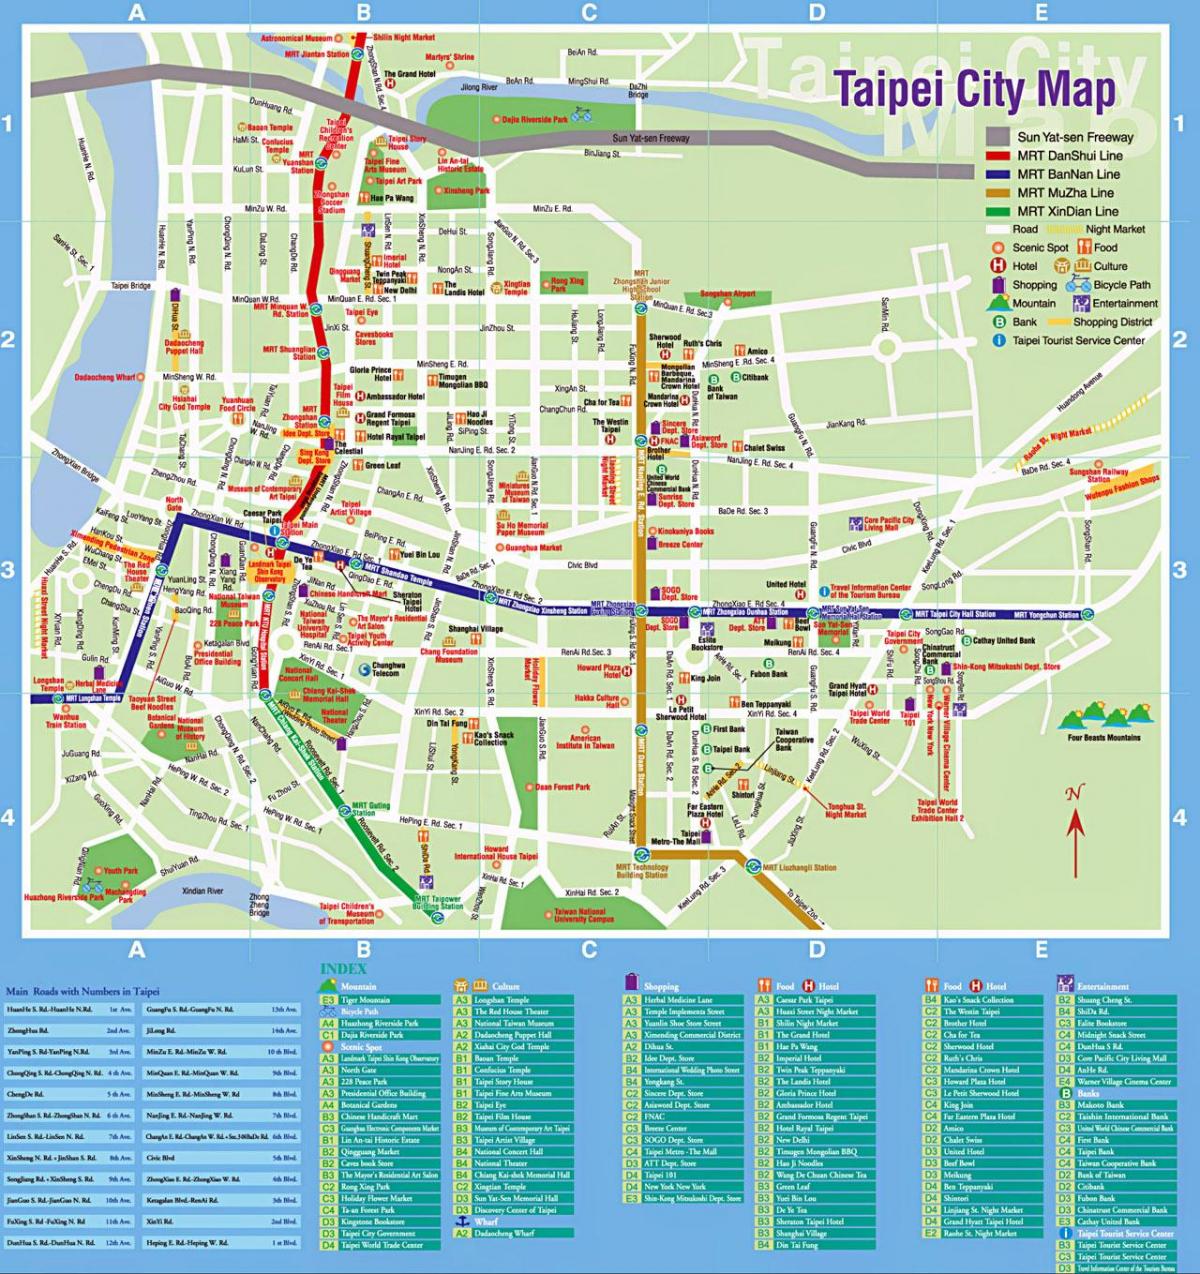 Taipei sightseeing kart